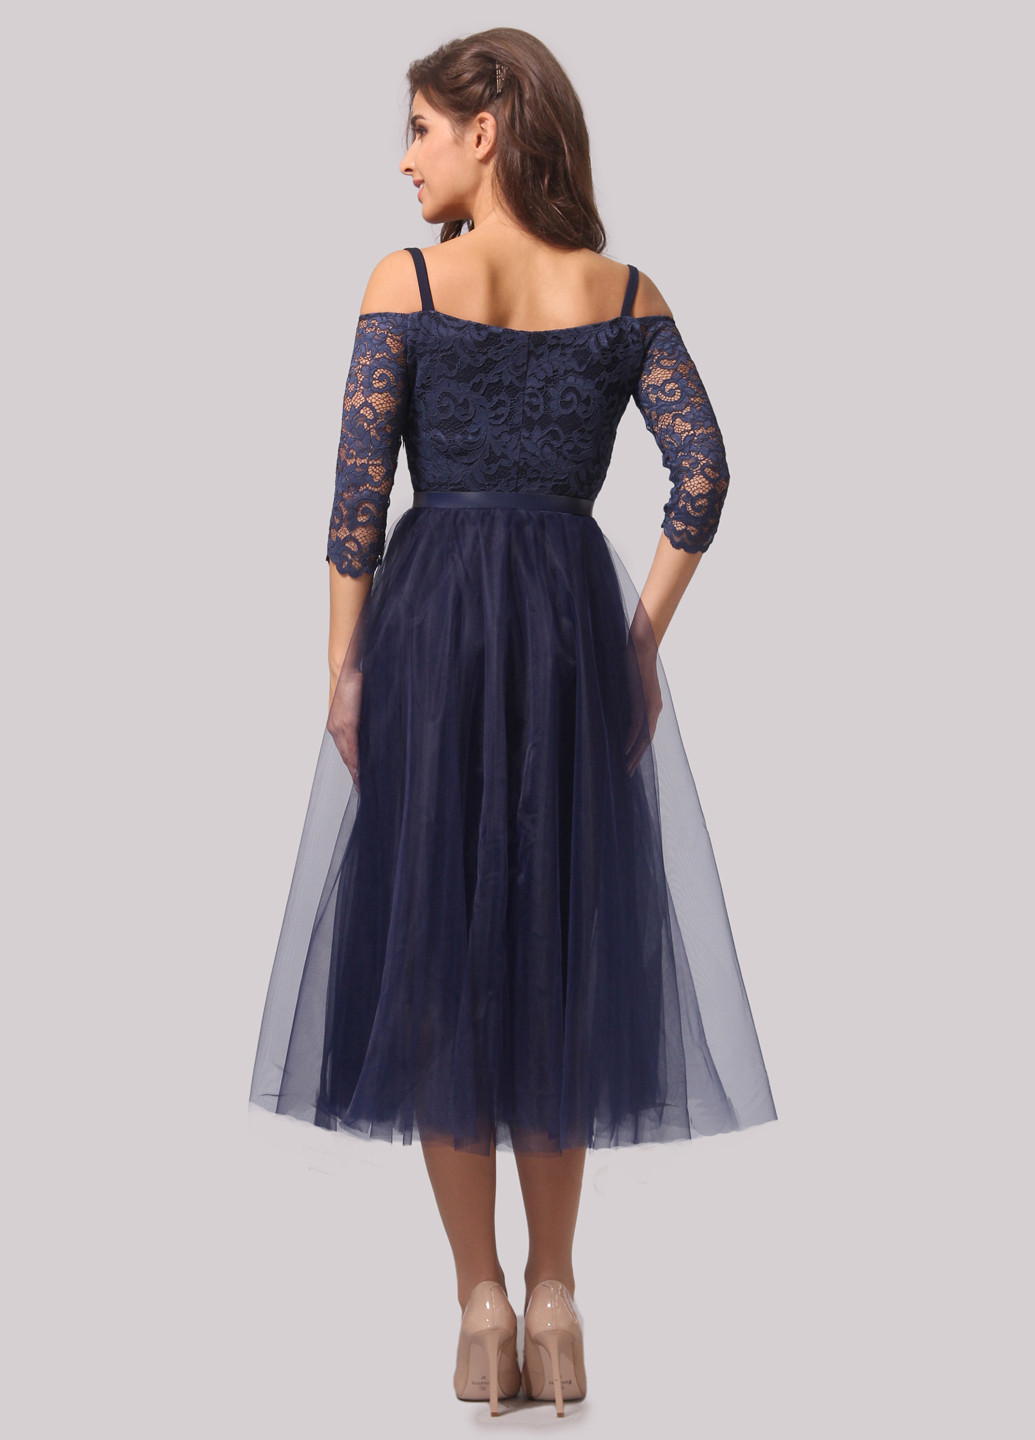 Темно-синее коктейльное платье пачка Agata Webers однотонное